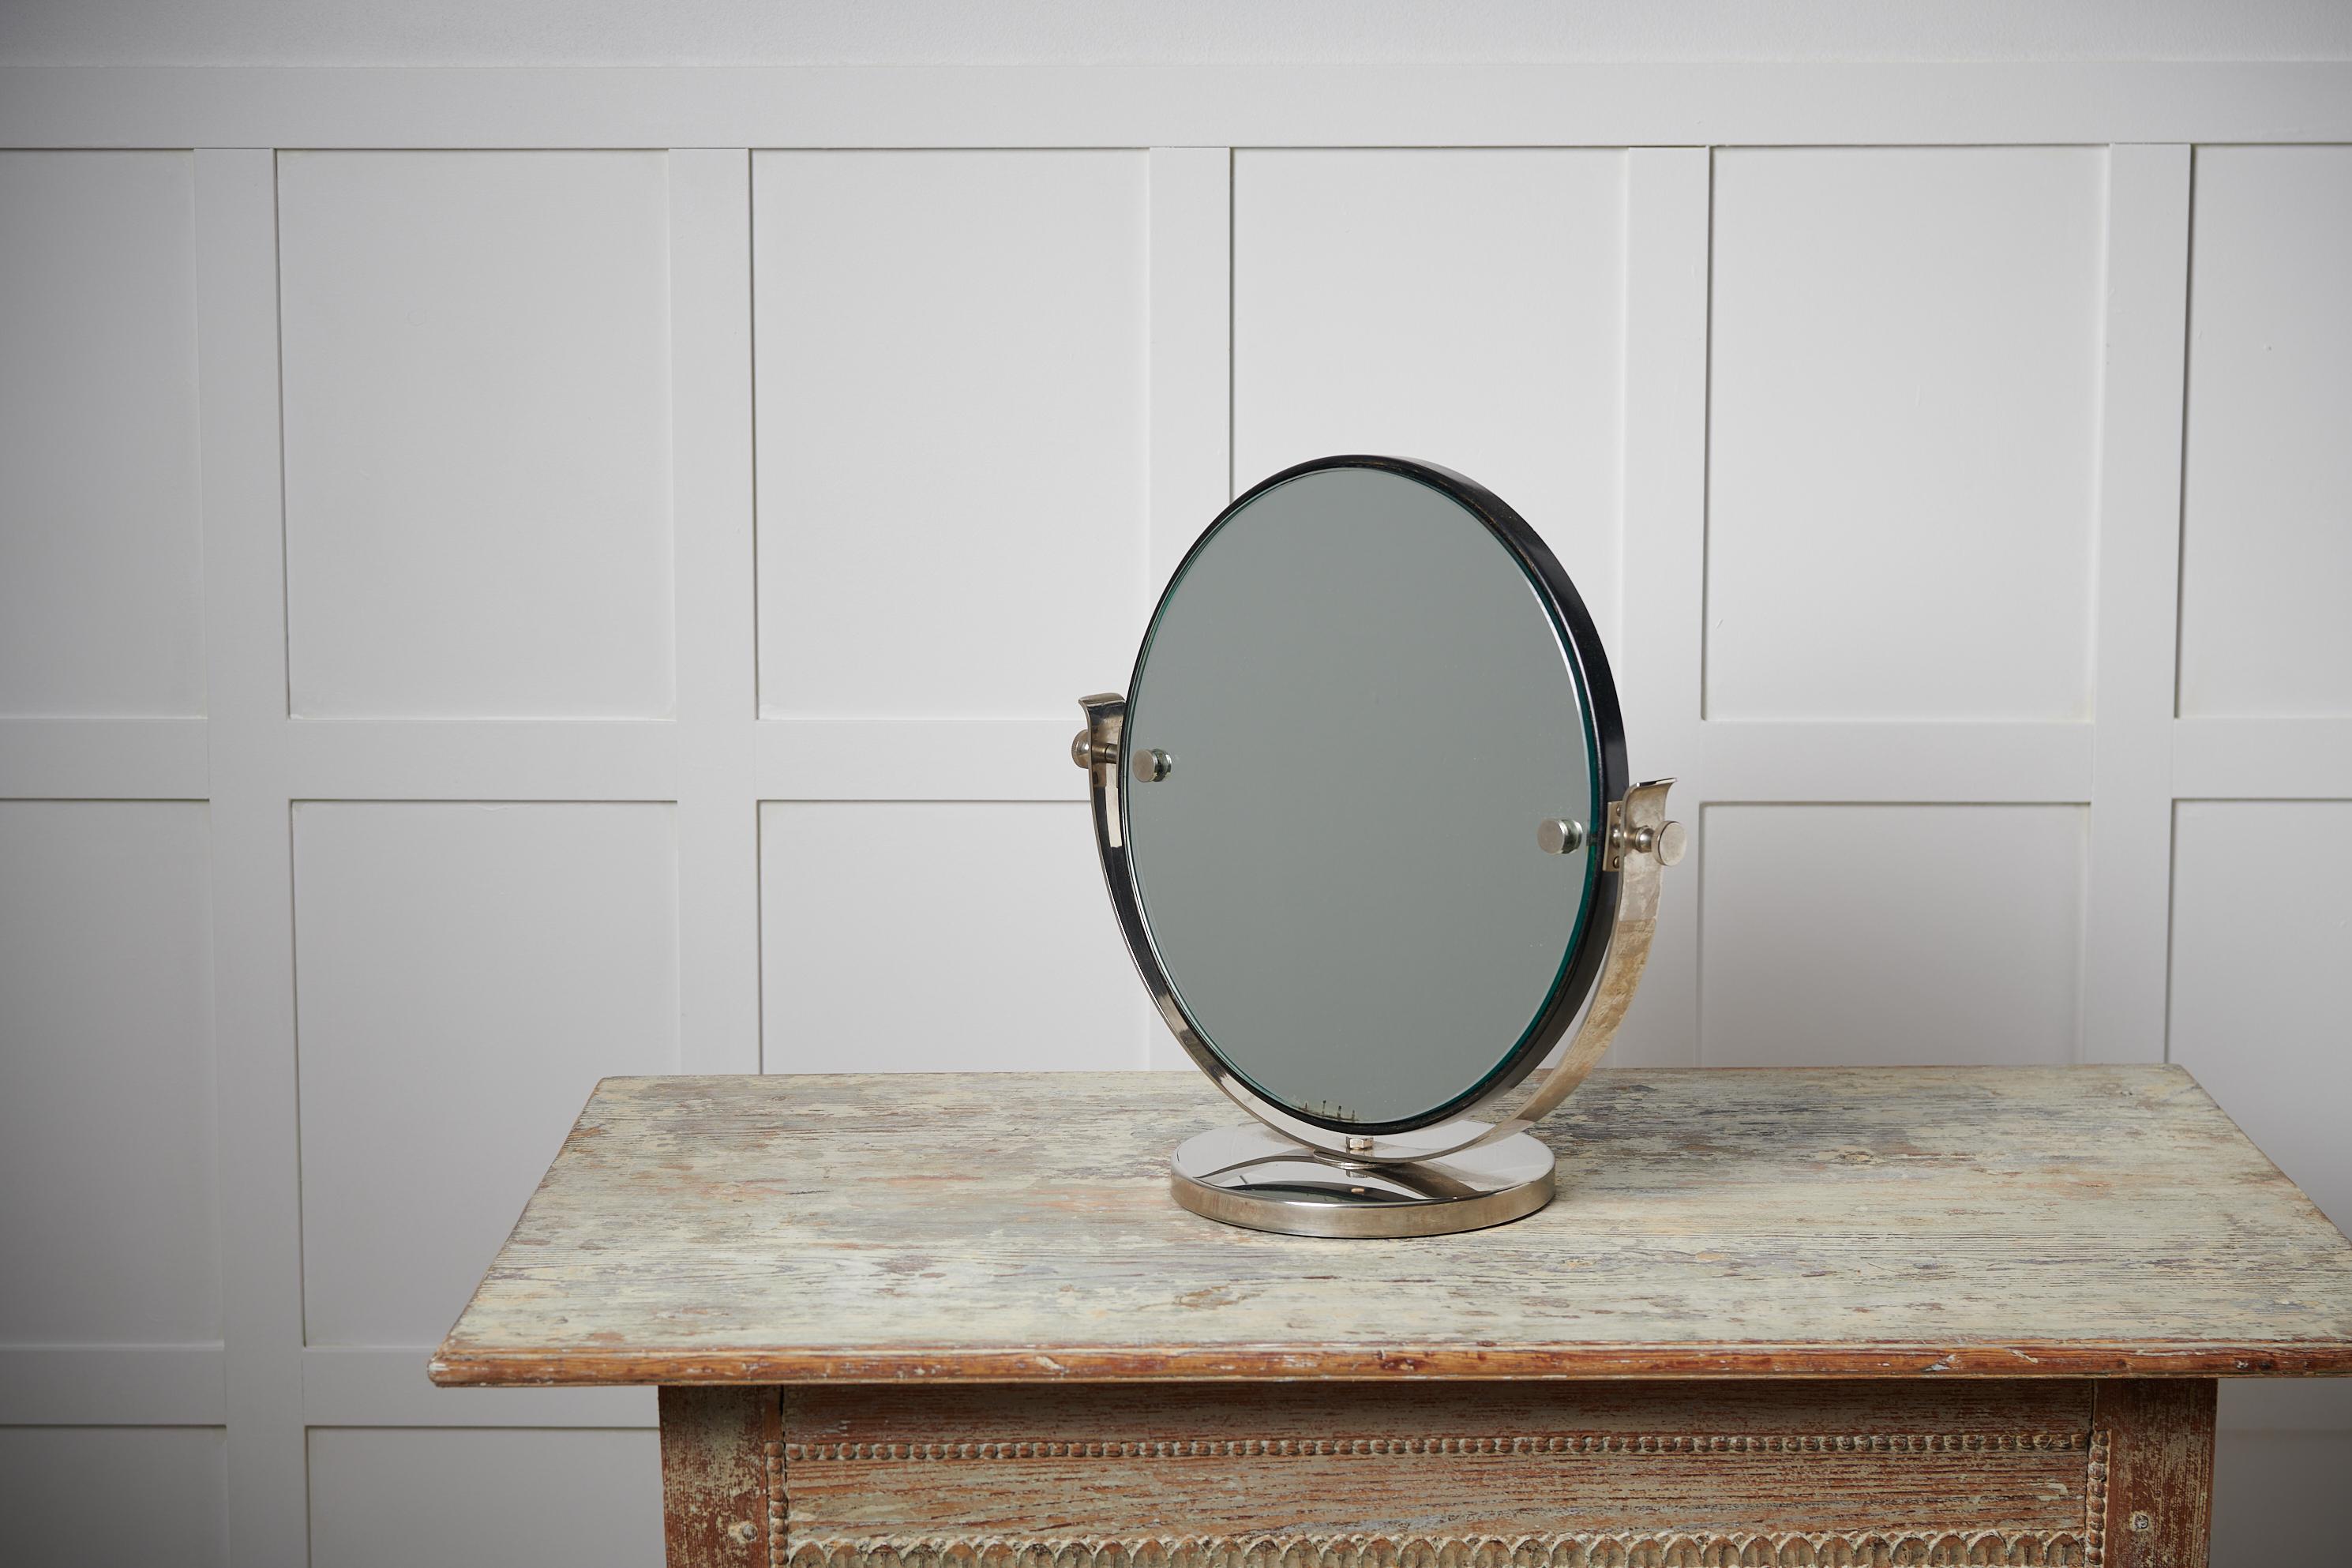 Art-déco-Tischspiegel aus Schweden, hergestellt in den 1930er Jahren. Der Spiegel hat einen verchromten Rahmen und einen verstellbaren Spiegel. Nur wenige Jahre vor einer echten Antiquität hat dieser Spiegel den Charme der Art-Déco-Periode und ist